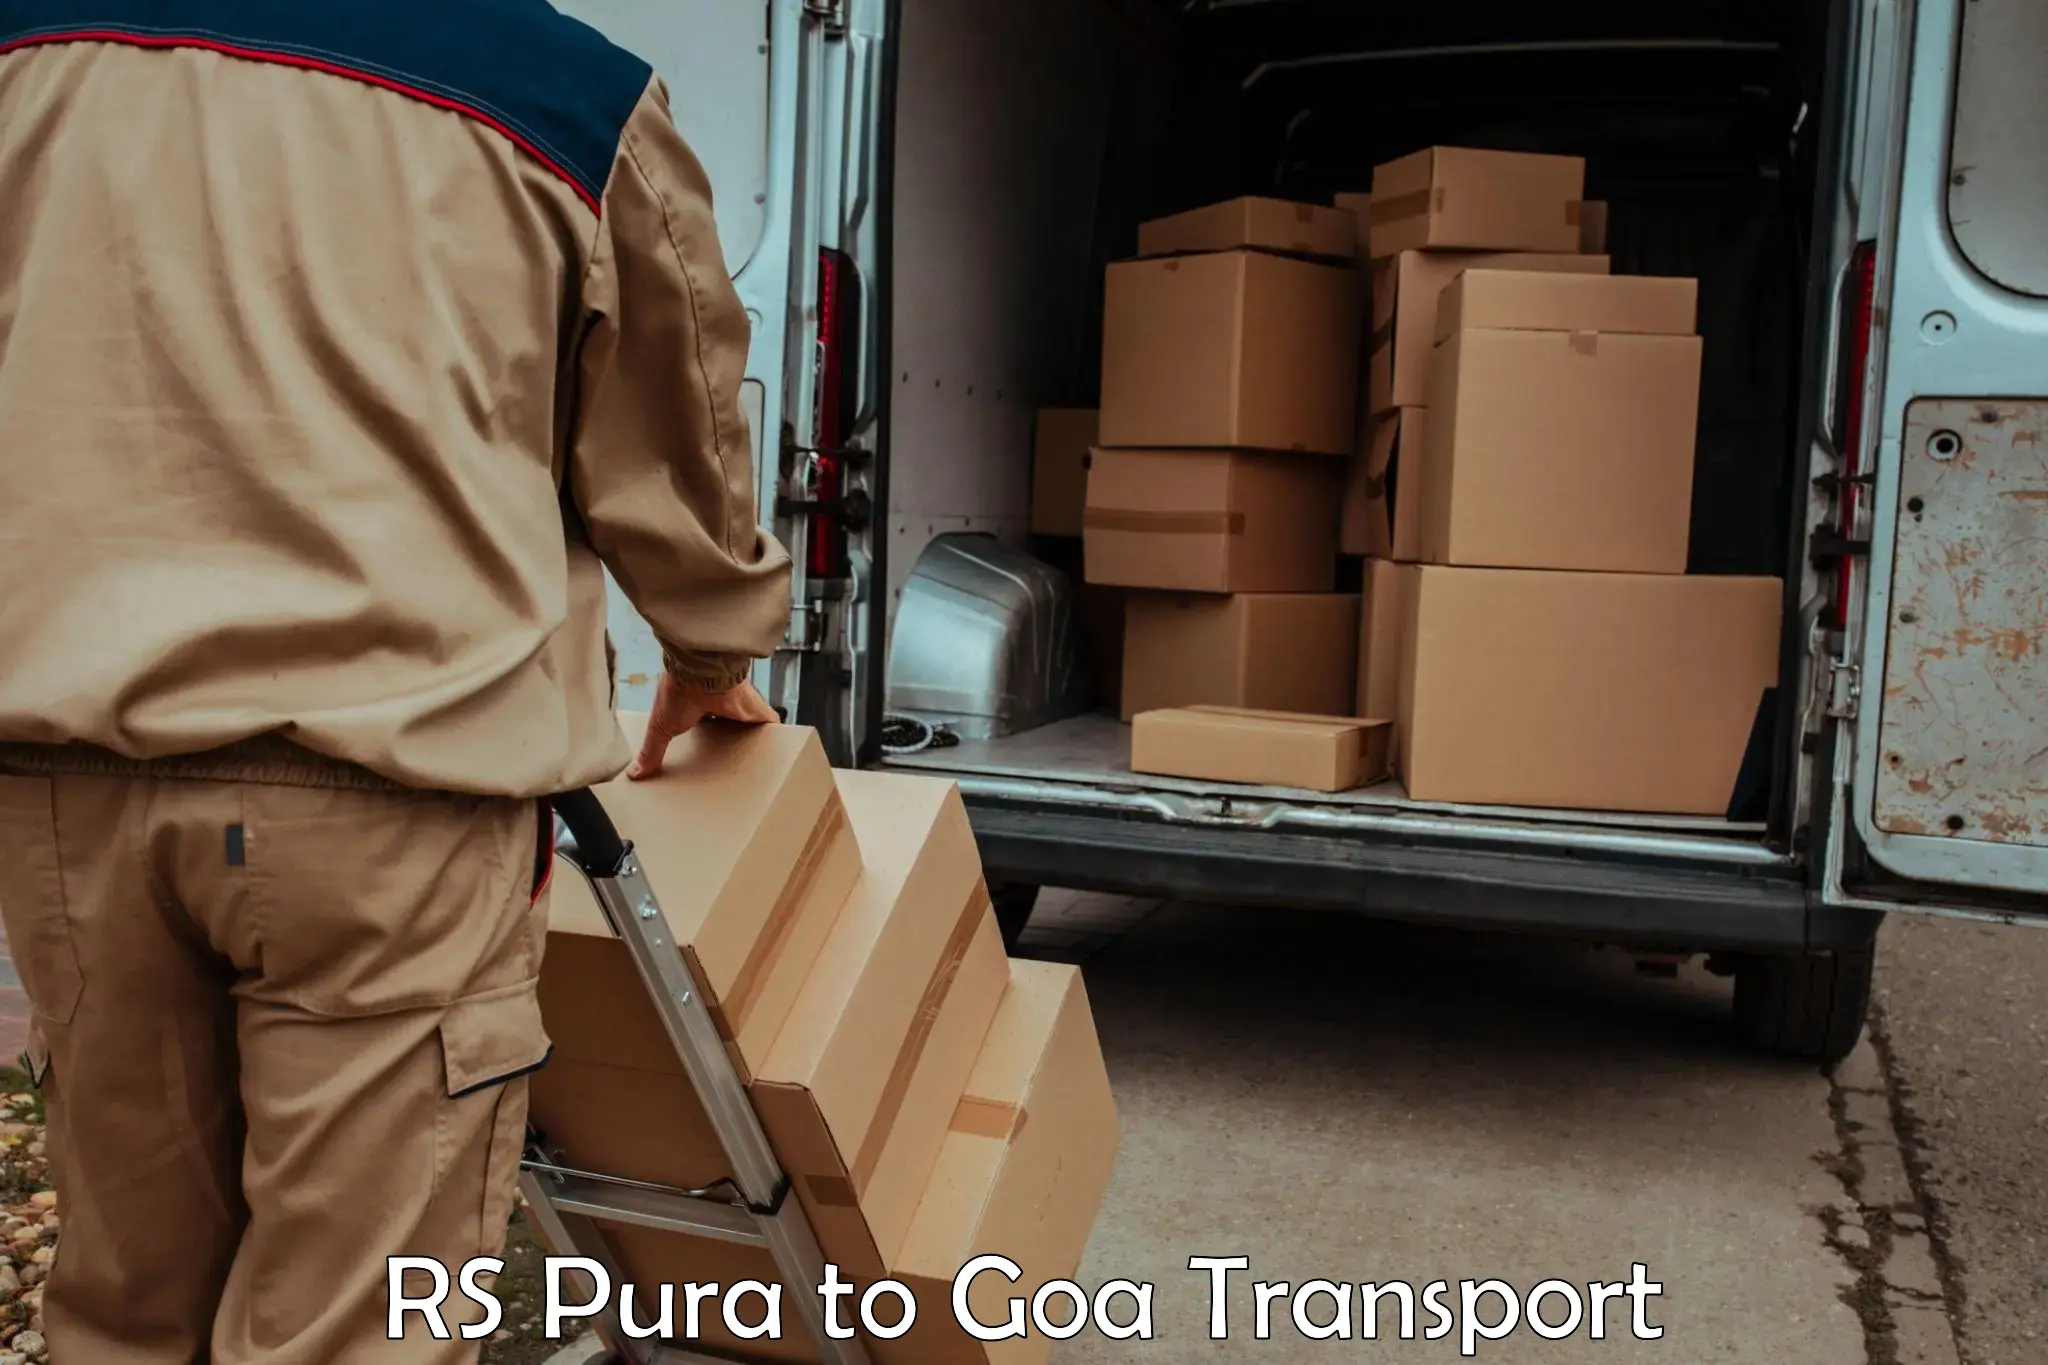 Door to door transport services RS Pura to Goa